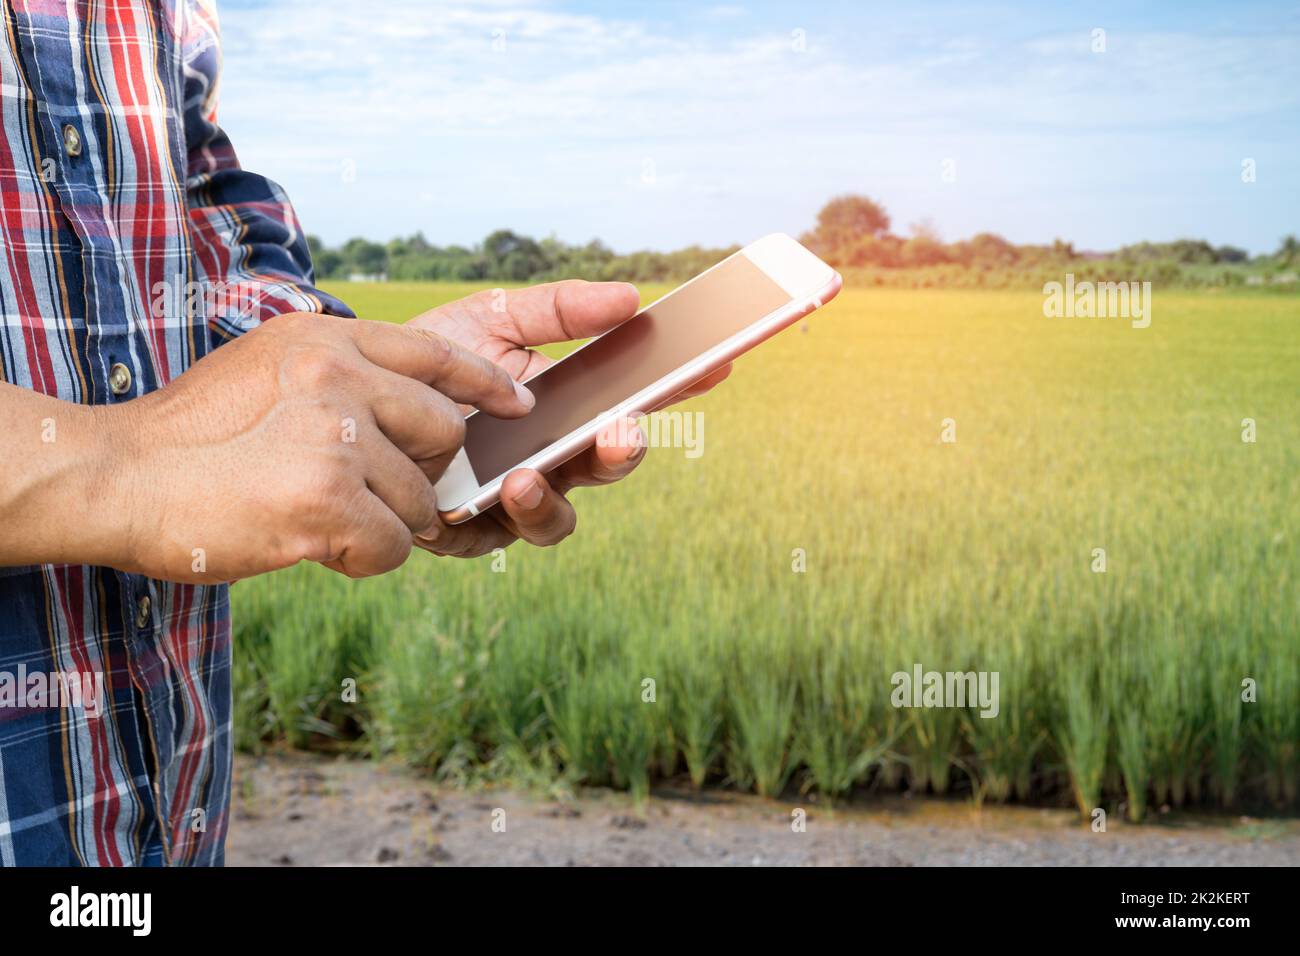 Les agriculteurs utilisent le téléphone mobile numérique pour recueillir, rapporter et analyser des données dans l'agriculture rizicole, concept d'agriculture intelligente. Banque D'Images